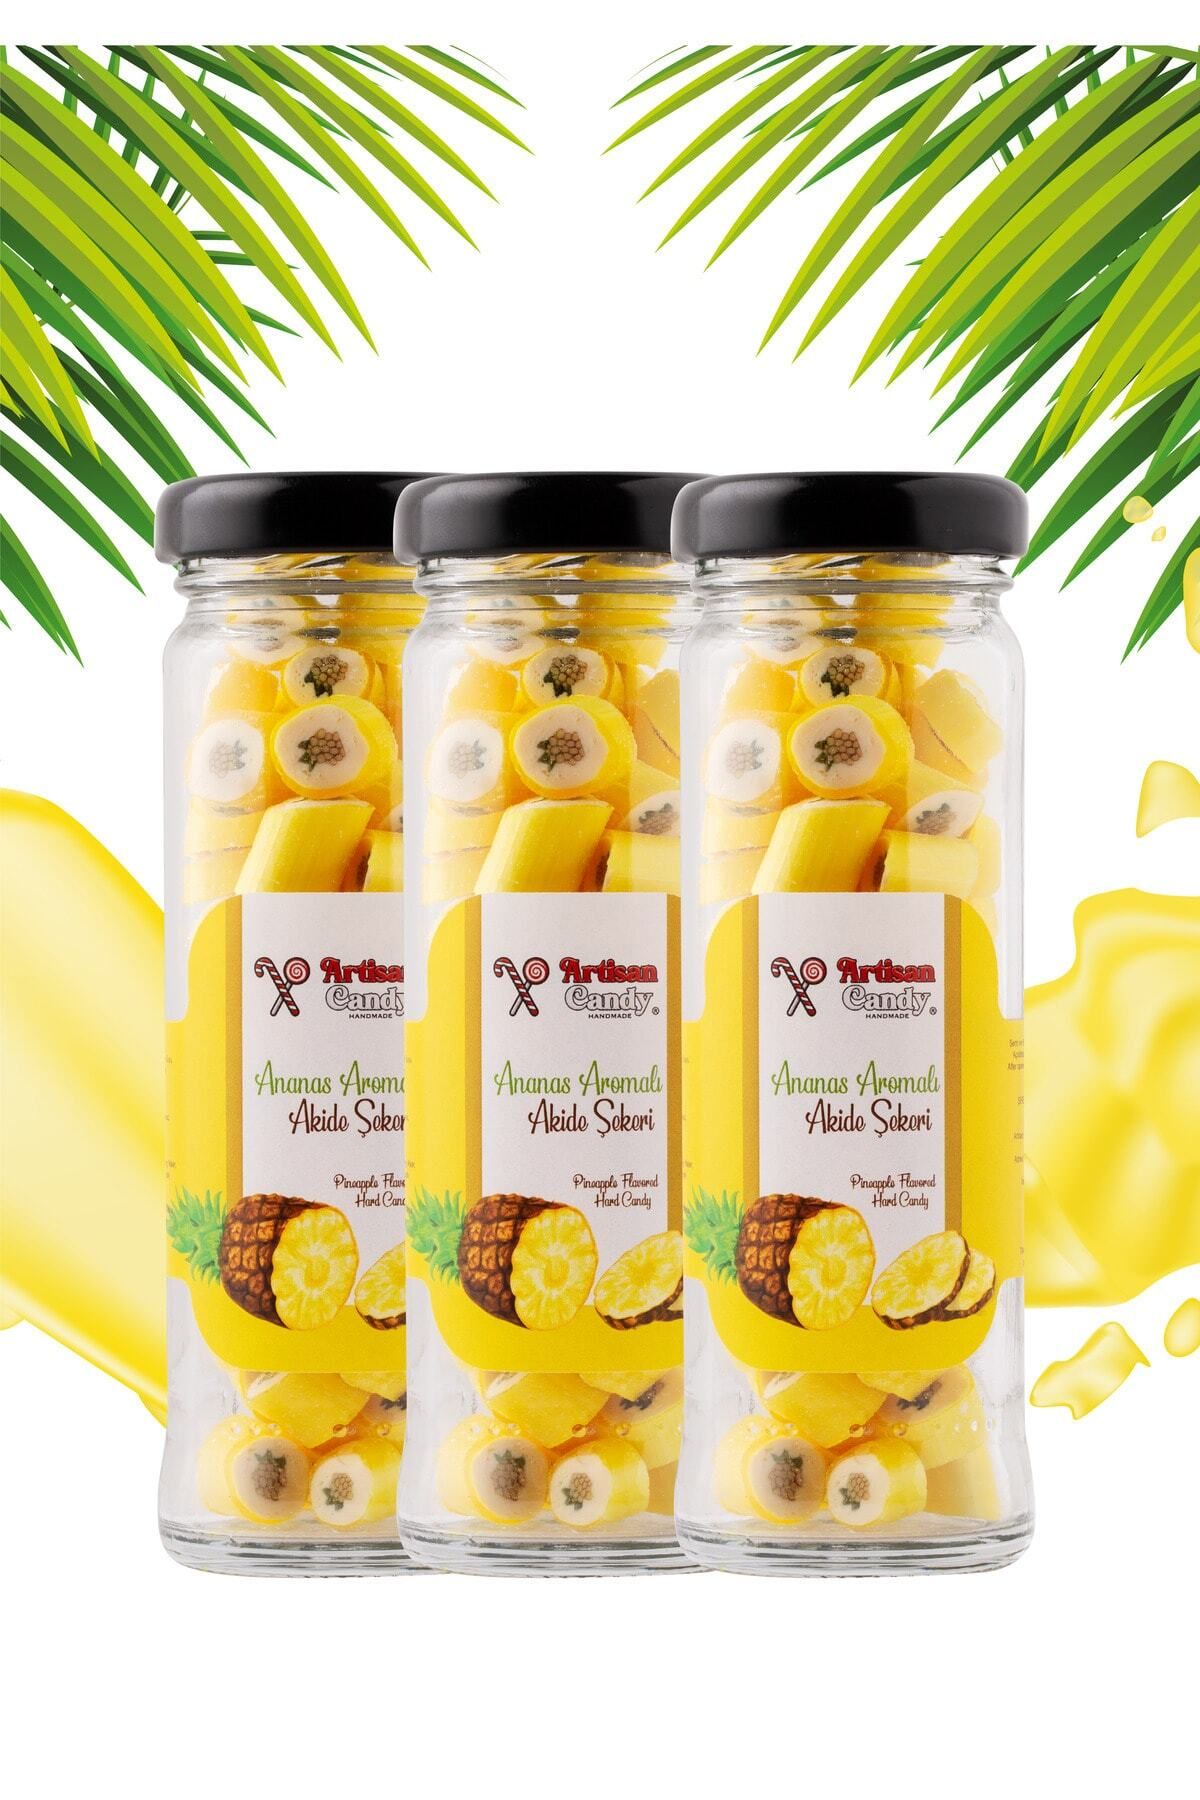 Artisan Candy Artisan Pineapple Candy / Ananas Aromalı El Yapımı Şeker 65gr X 3 Adet